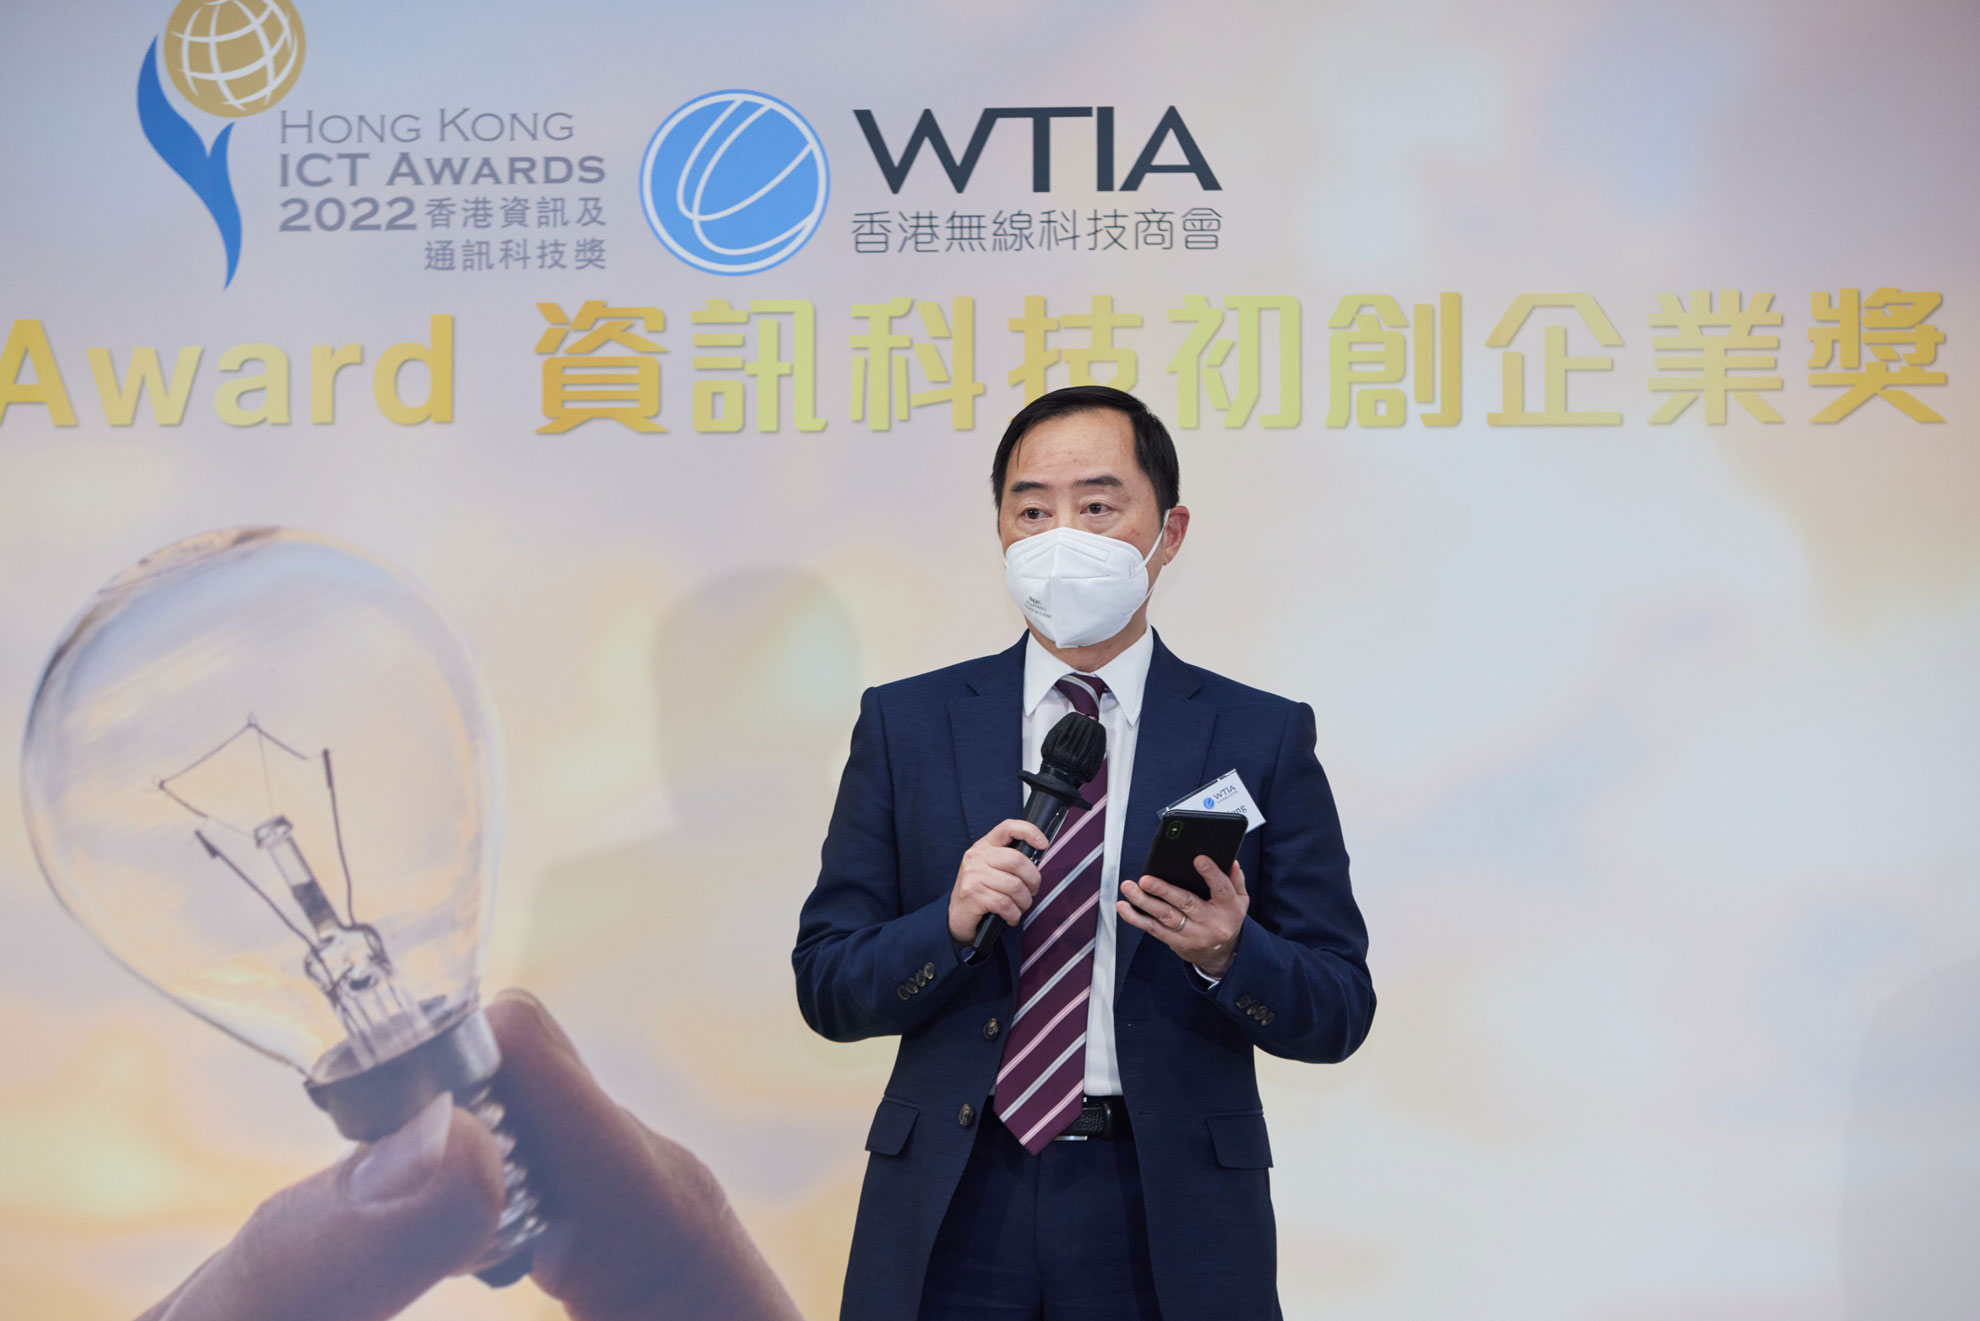 副政府资讯科技总监黄志光先生于「2022资讯科技初创企业奖简介会 x 分享研讨会」致辞。